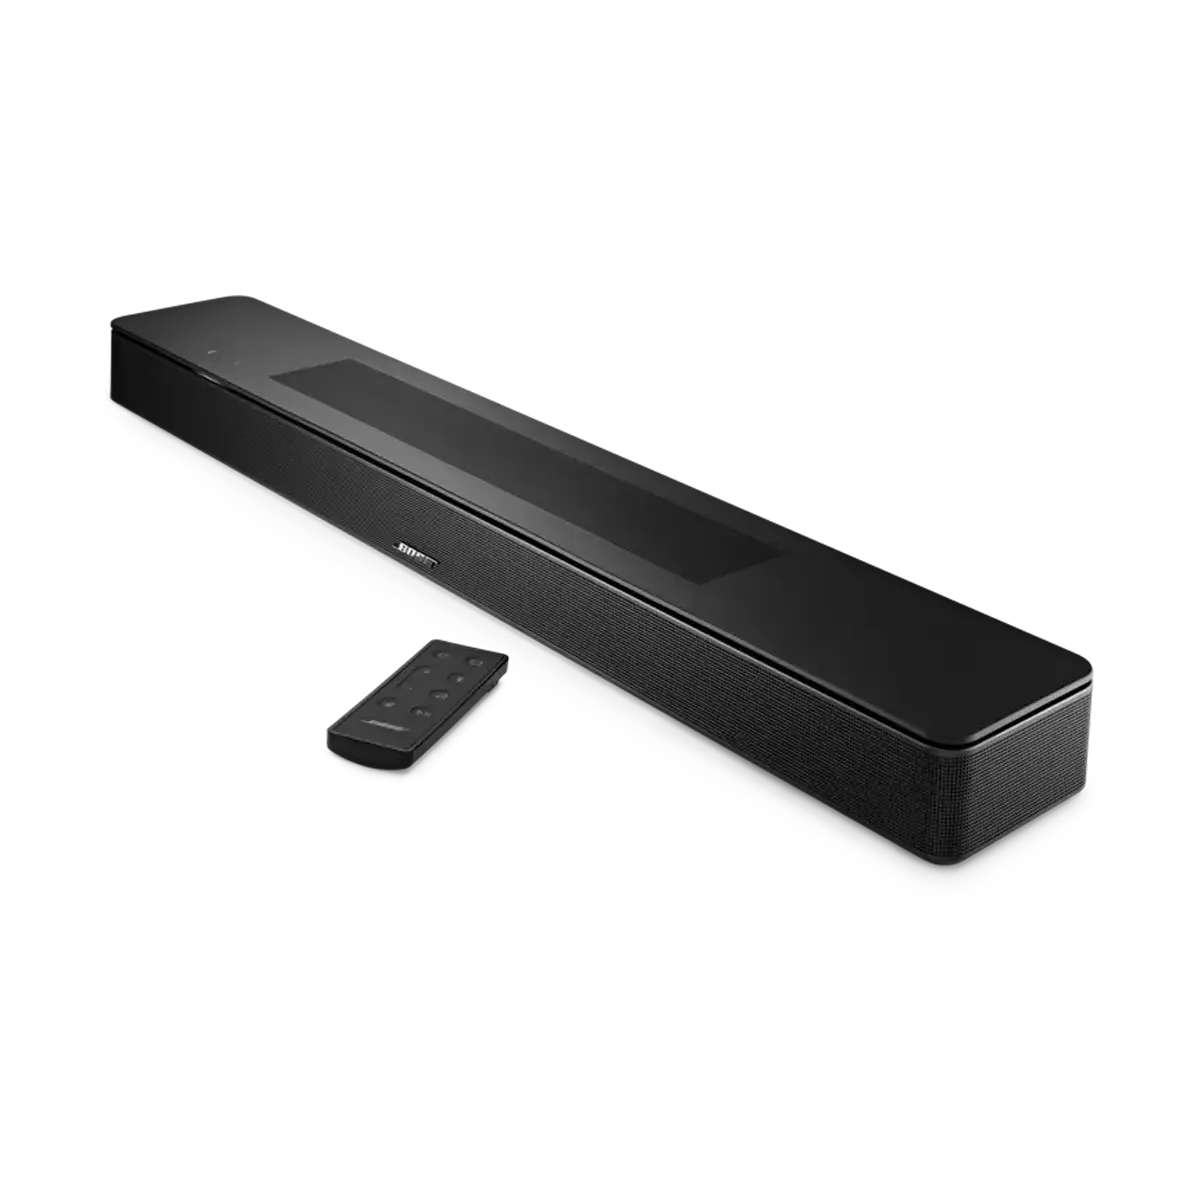 product - Loa thanh thông minh Bose Smart Soundbar 600